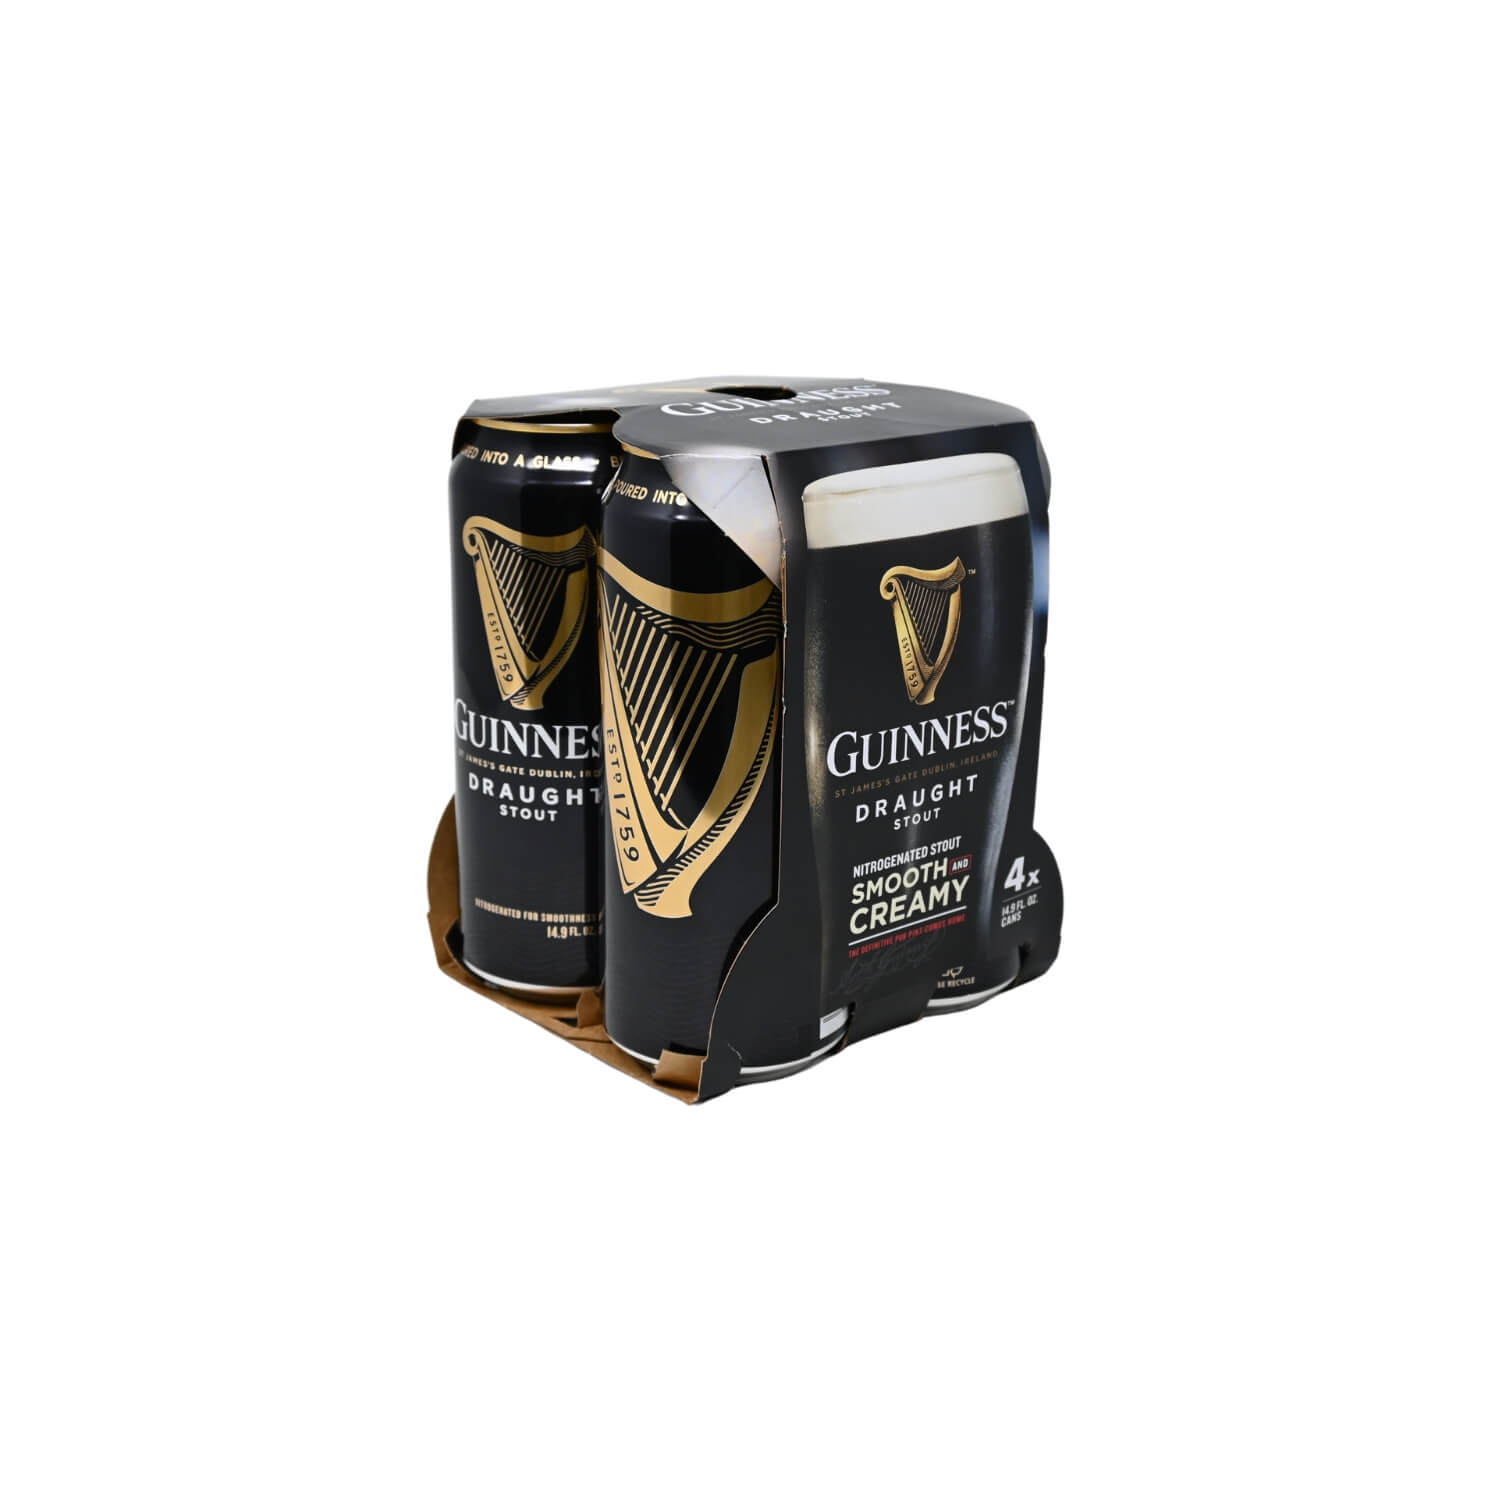  [Paquete de 4] cerveza Guinness Irish Dry Stout sin